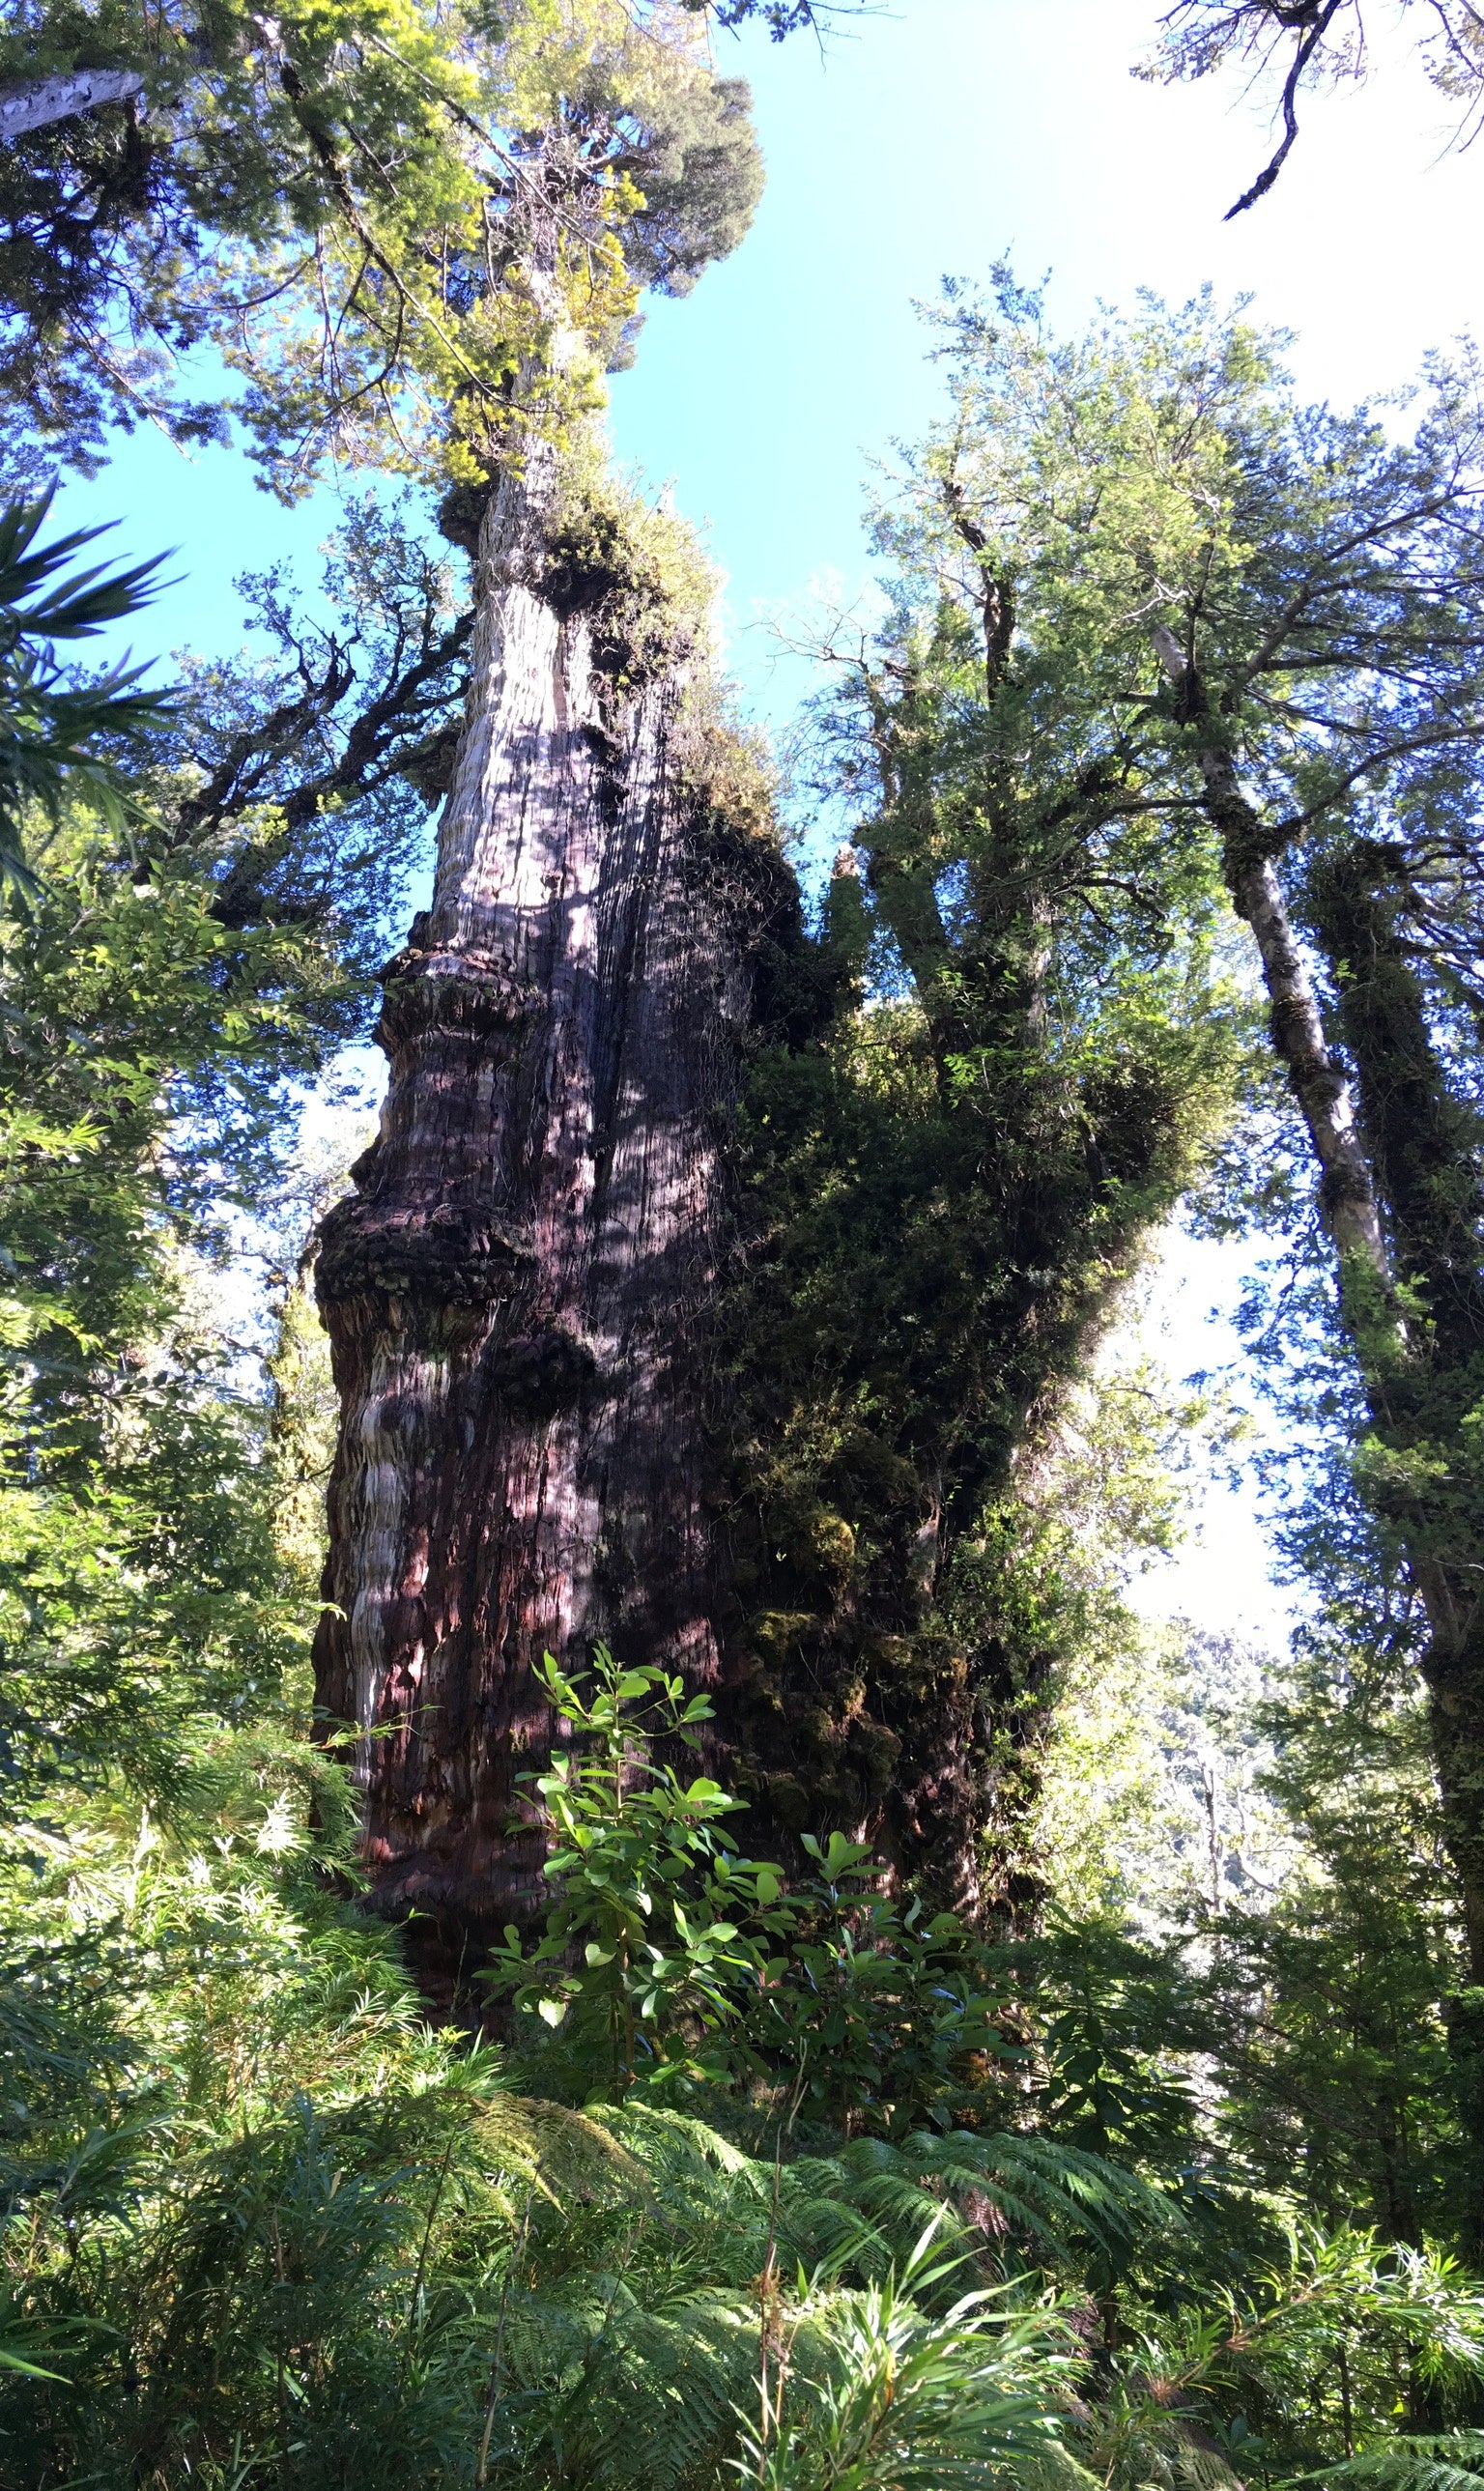 Los científicos no pudieron determinar la edad exacta del árbol basándose en el enorme tronco